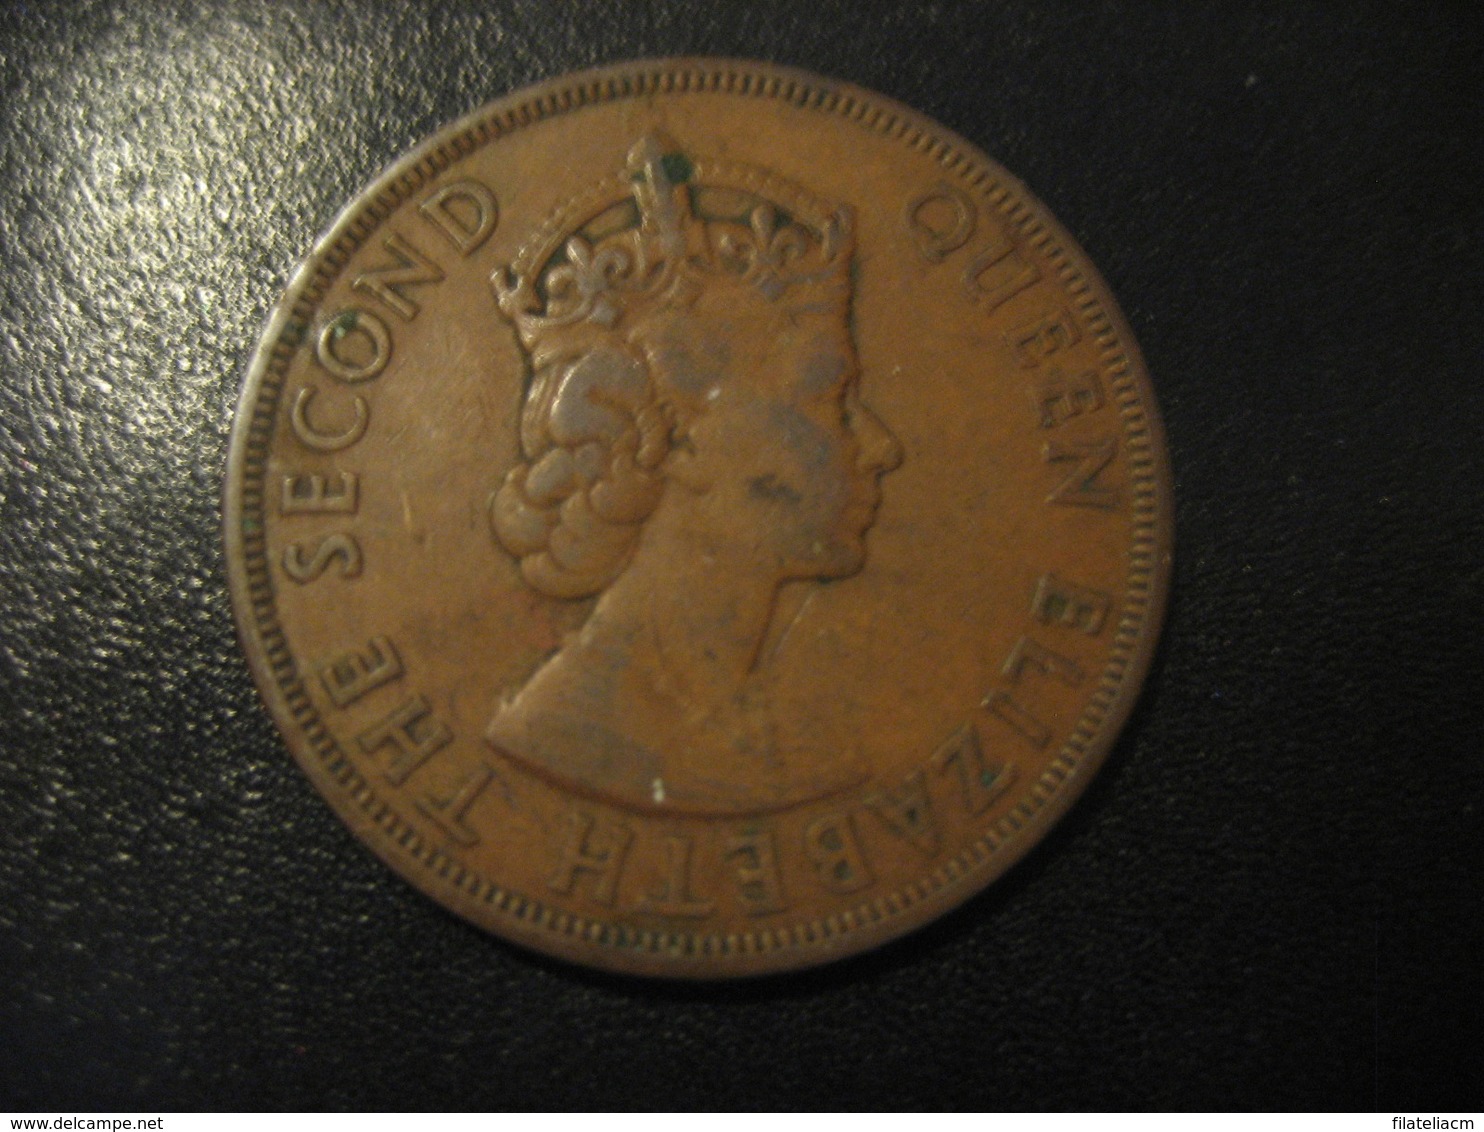 2 Cents BRITISH CARIBBEAN TERRITORIES 1955 Coin British West Indies Antillas - West Indies